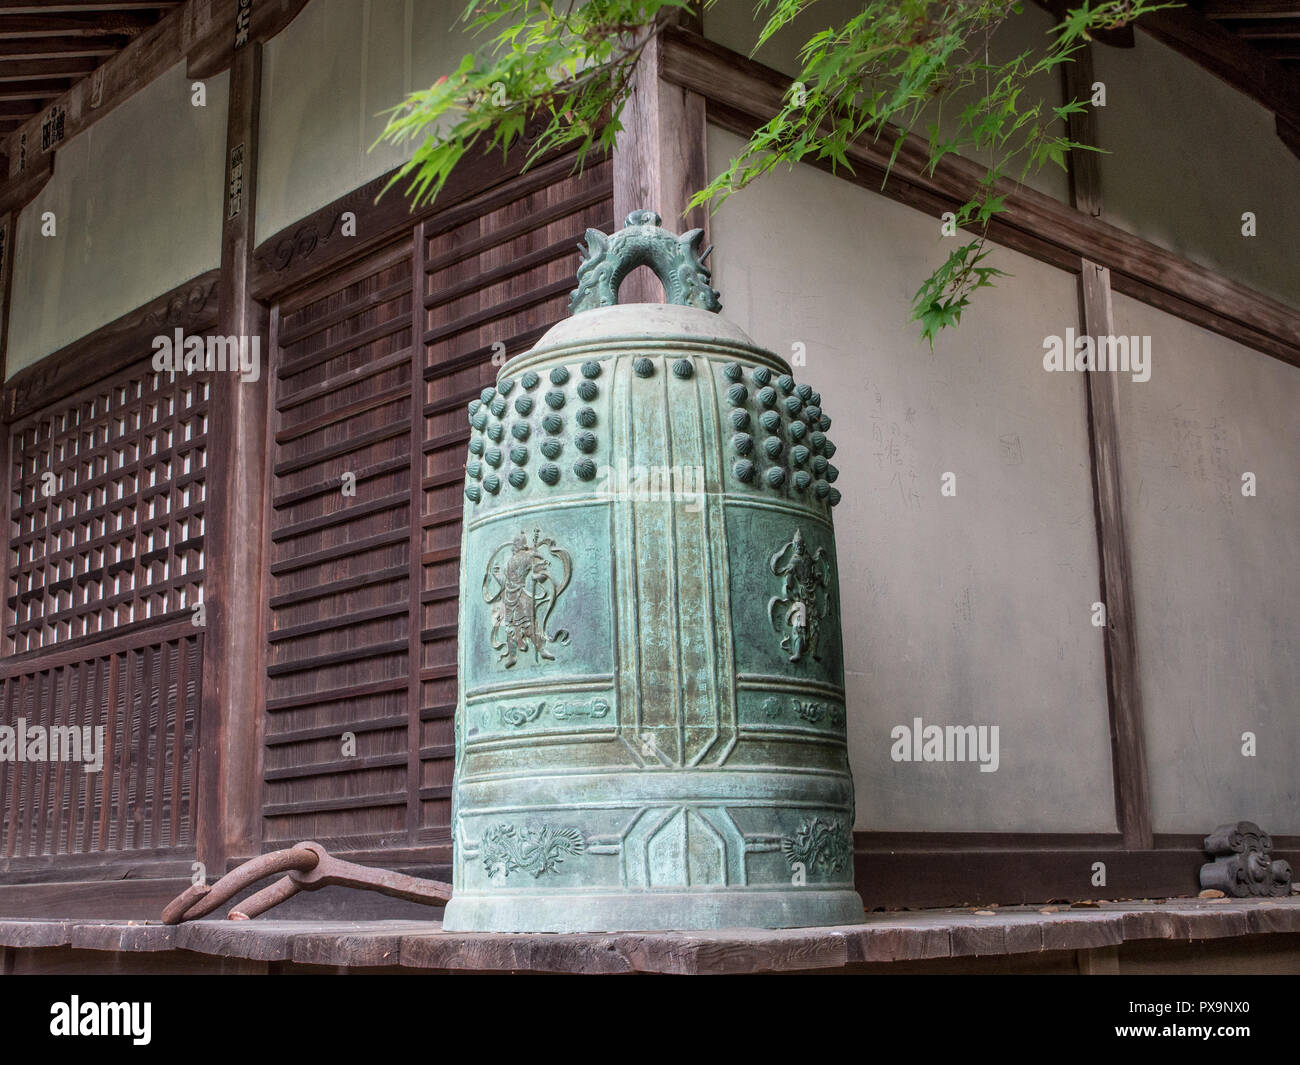 Tempio di bronzo campana, sulla veranda, smontati, appesi, molla momiji foglie, tempio Iyadaniji 71, Shikoku 88 tempio pellegrinaggio, Kagawa, Giappone Foto Stock